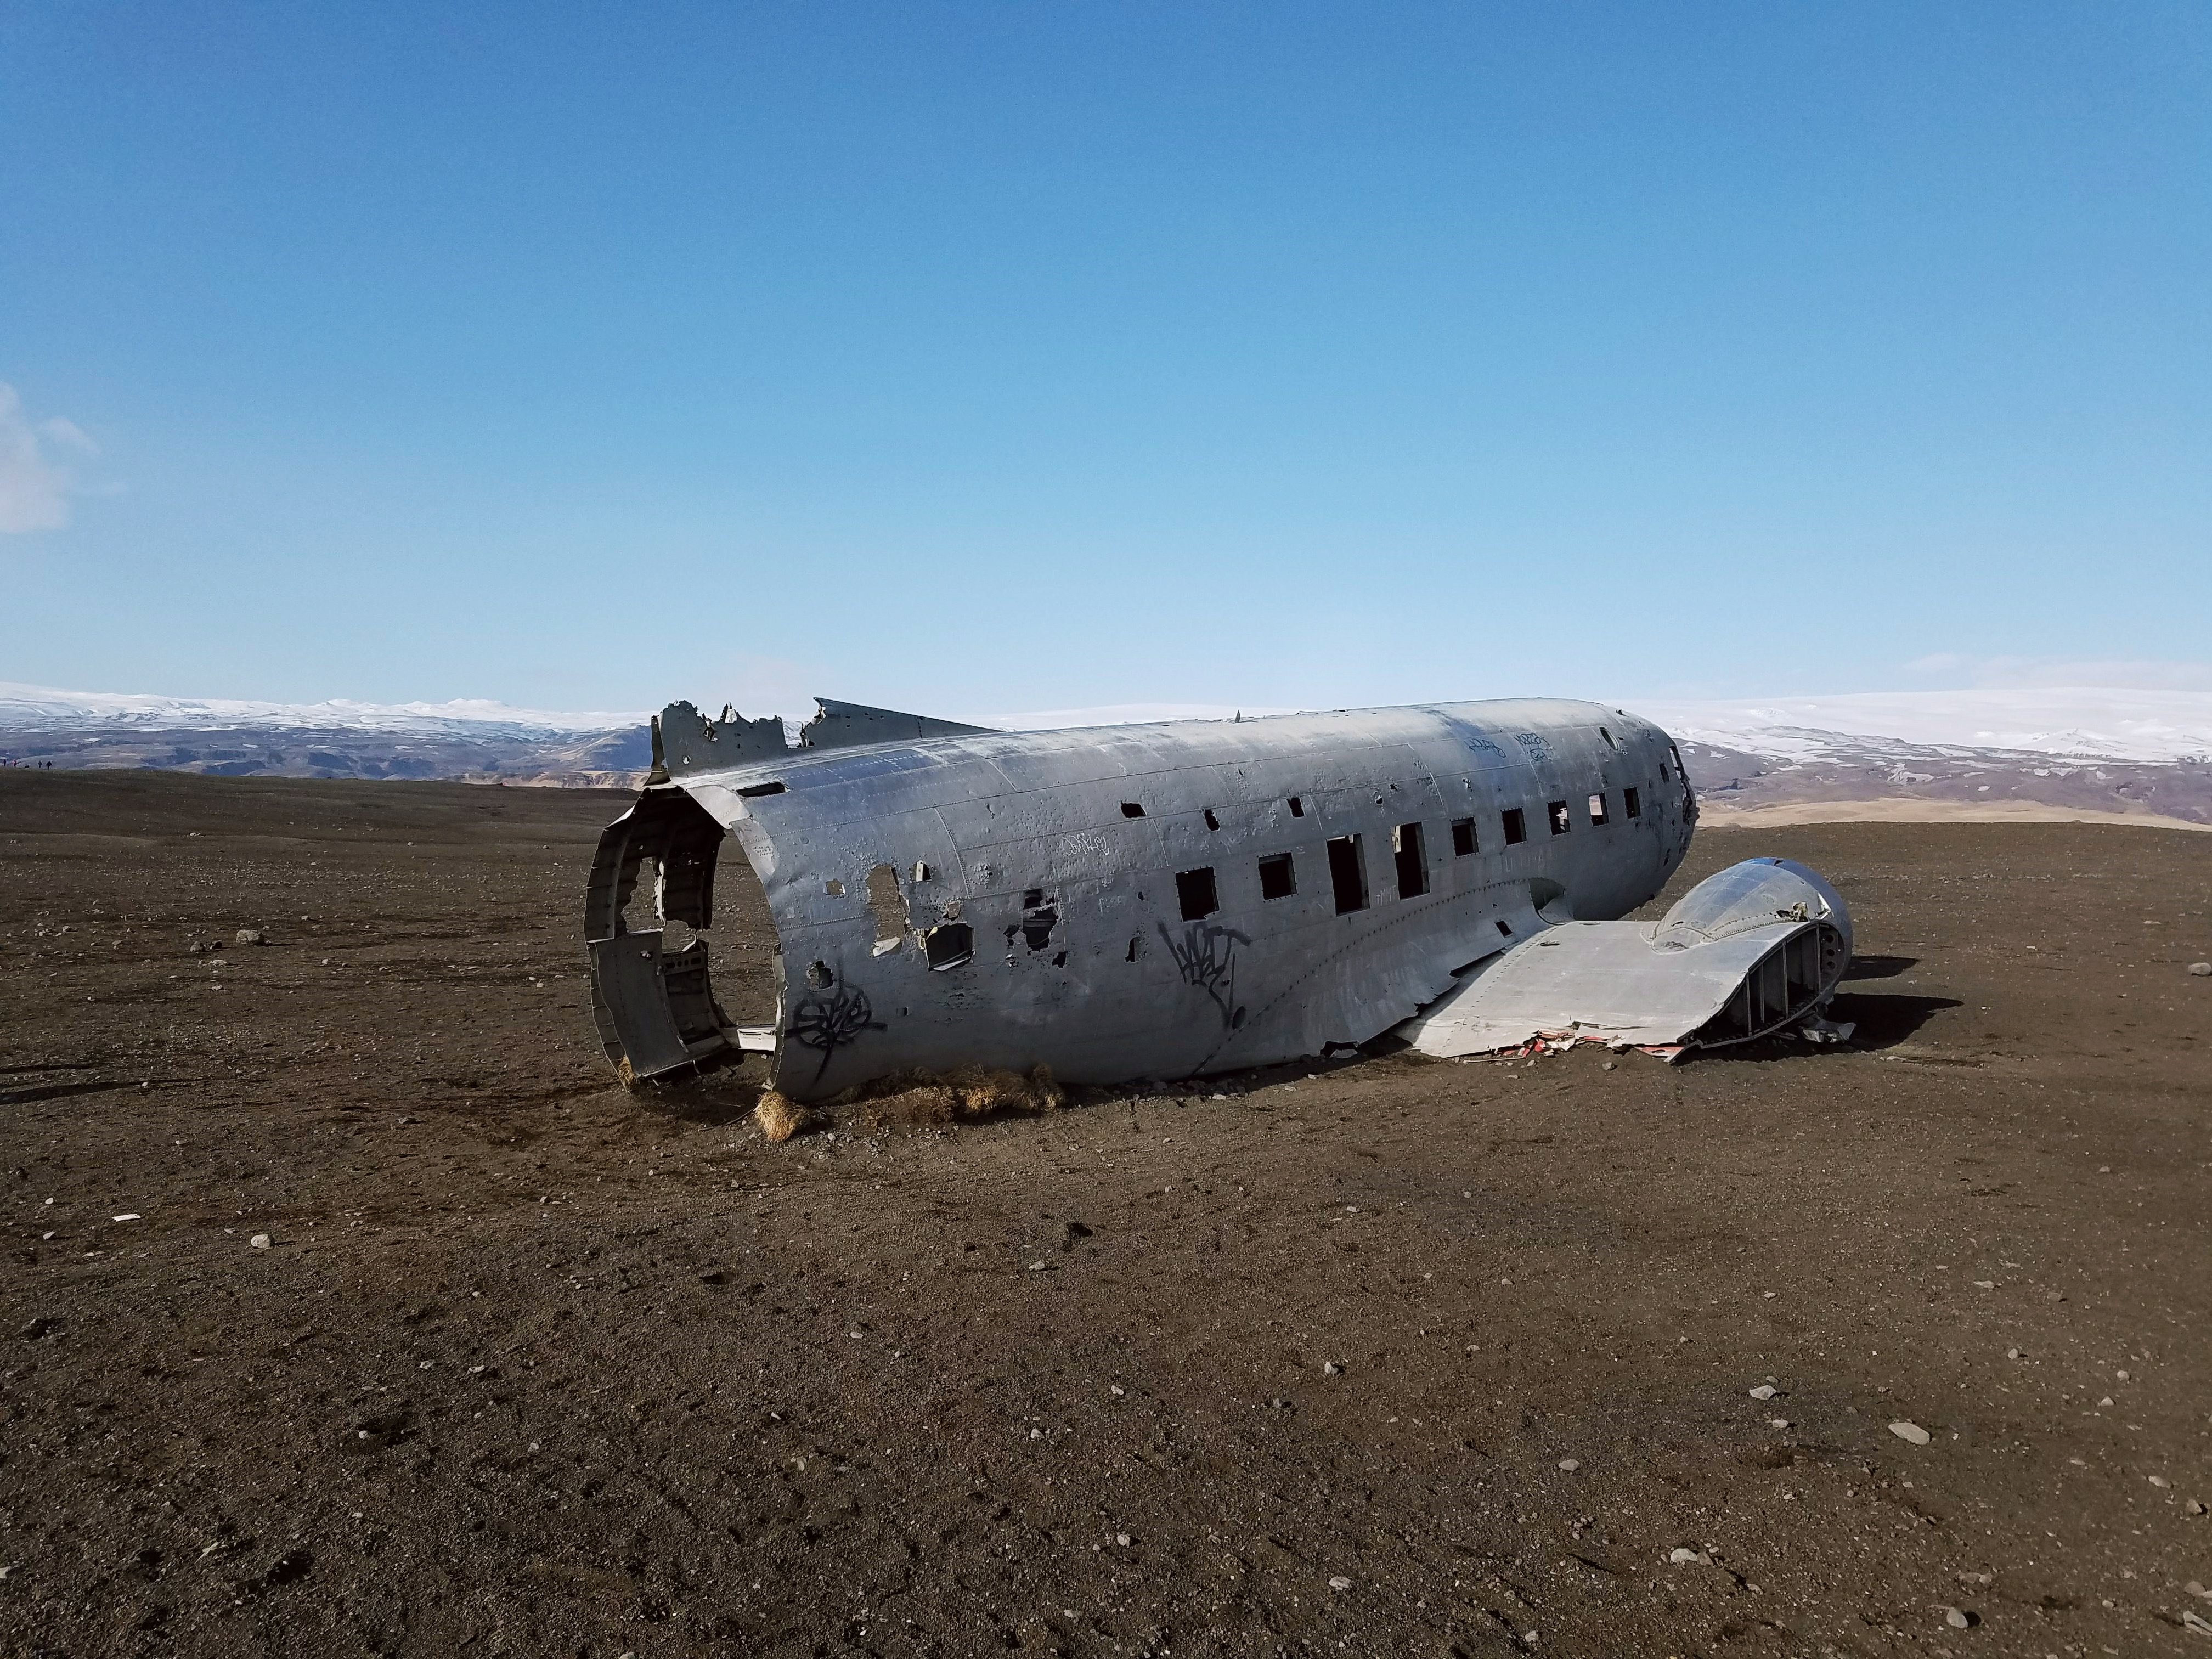 Solheimasandur plane wreck in Iceland